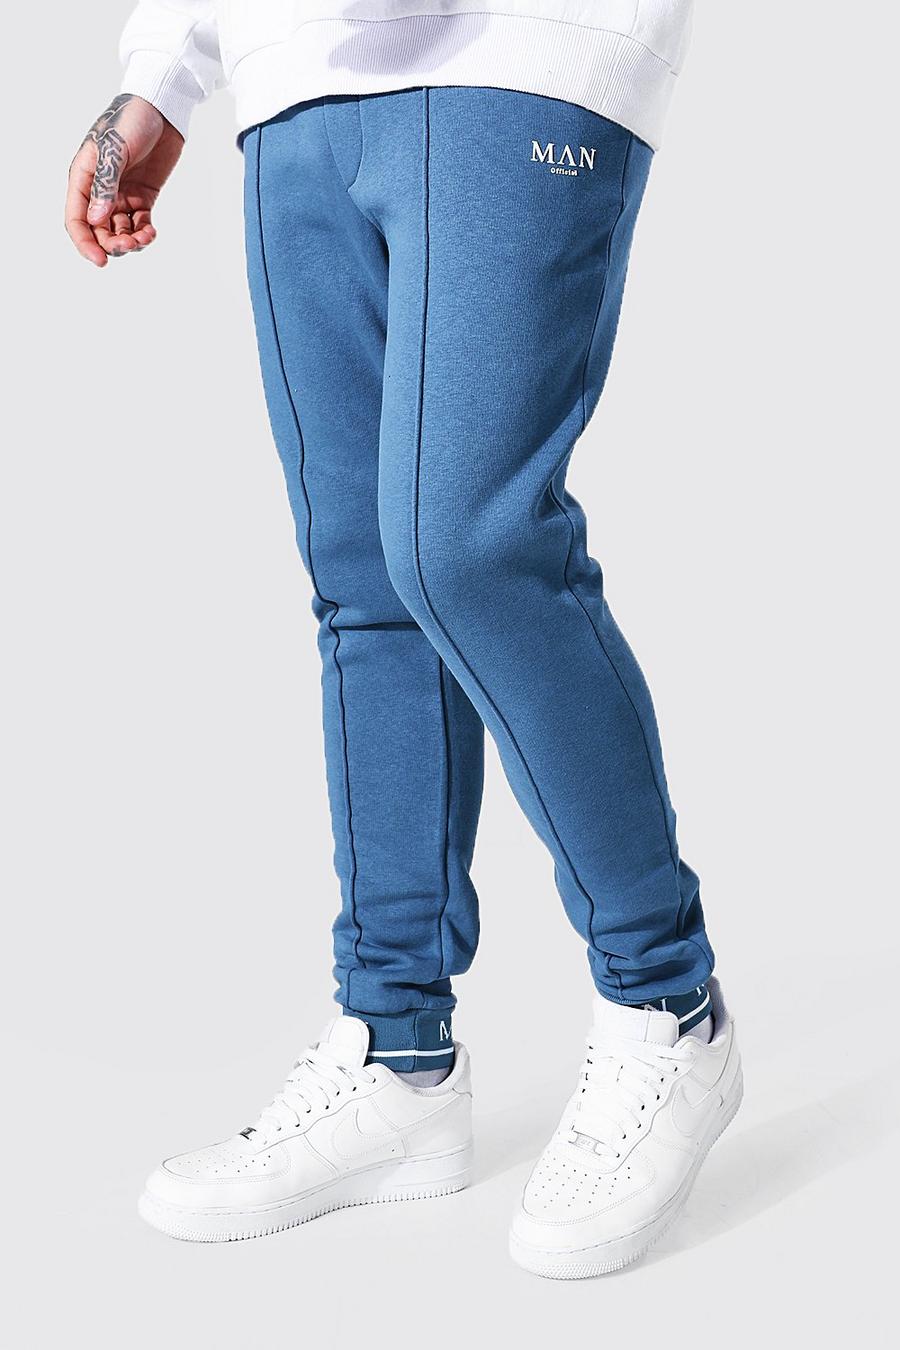 כחול מכנסי ריצה סקיני עם קפל חפתים והדפס Man בפונט Roman image number 1